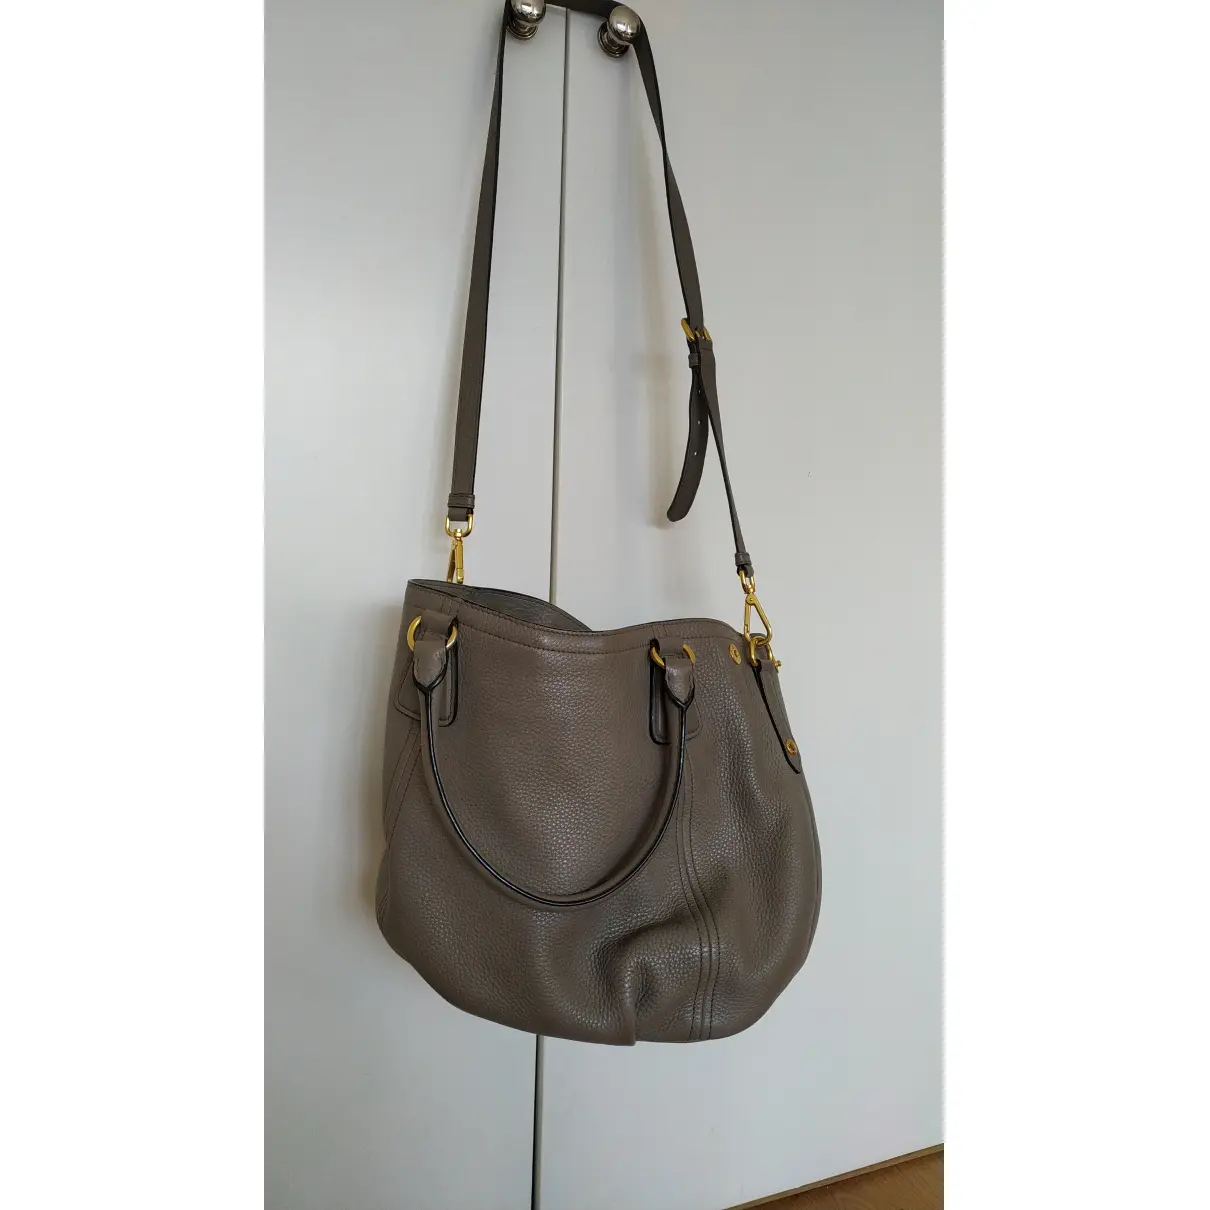 Buy Prada Promenade leather crossbody bag online